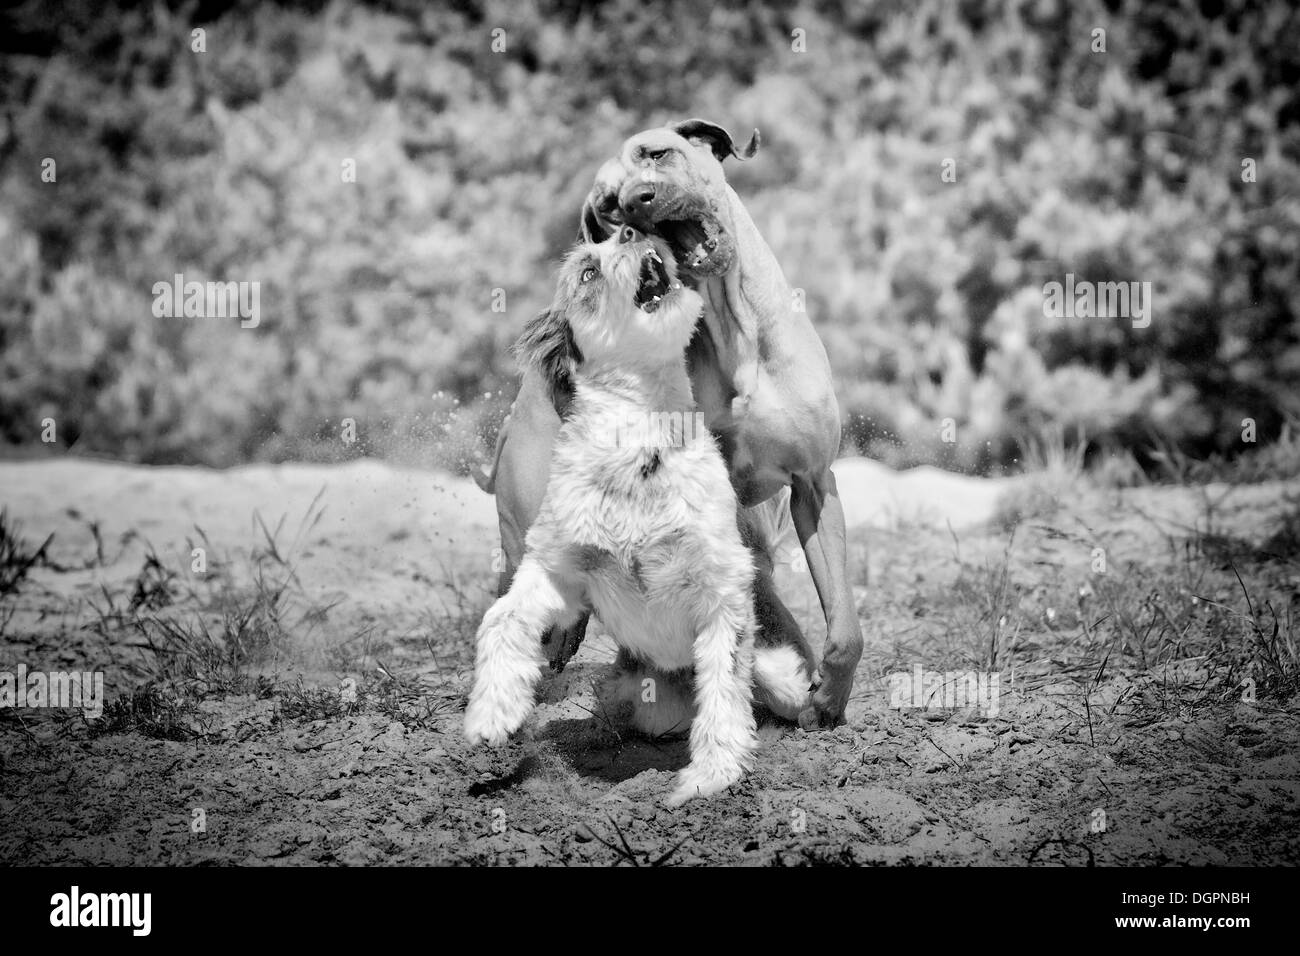 Le Rhodesian Ridgeback et une race mixte Briard chien jouant dans un bac à sable Banque D'Images